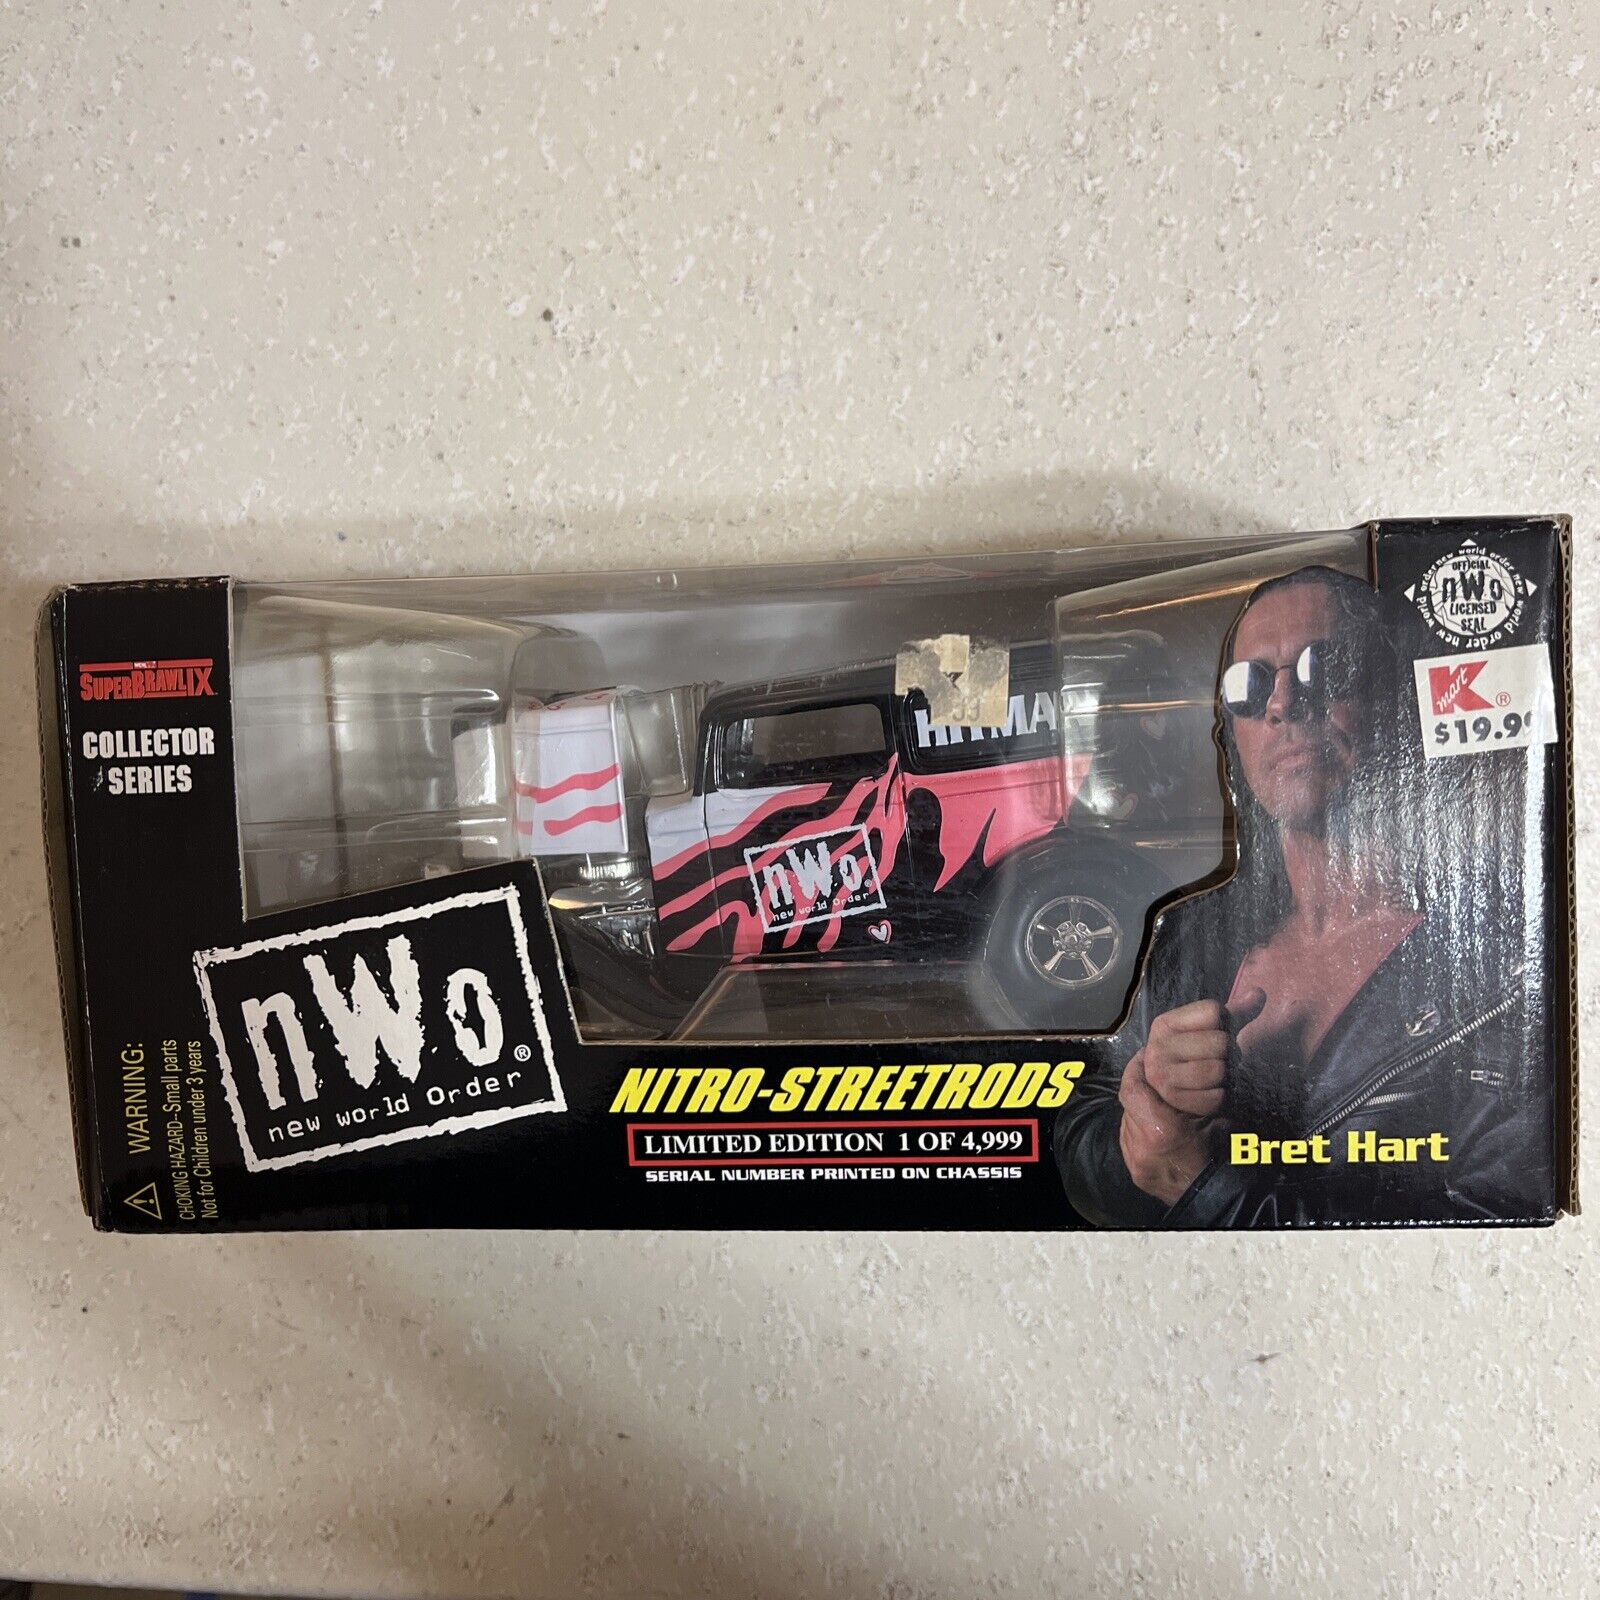 1999 Bret Hitman Hart NWO WCW Nitro Streetrods 1/24 Diecast Car AEW WWF WWE